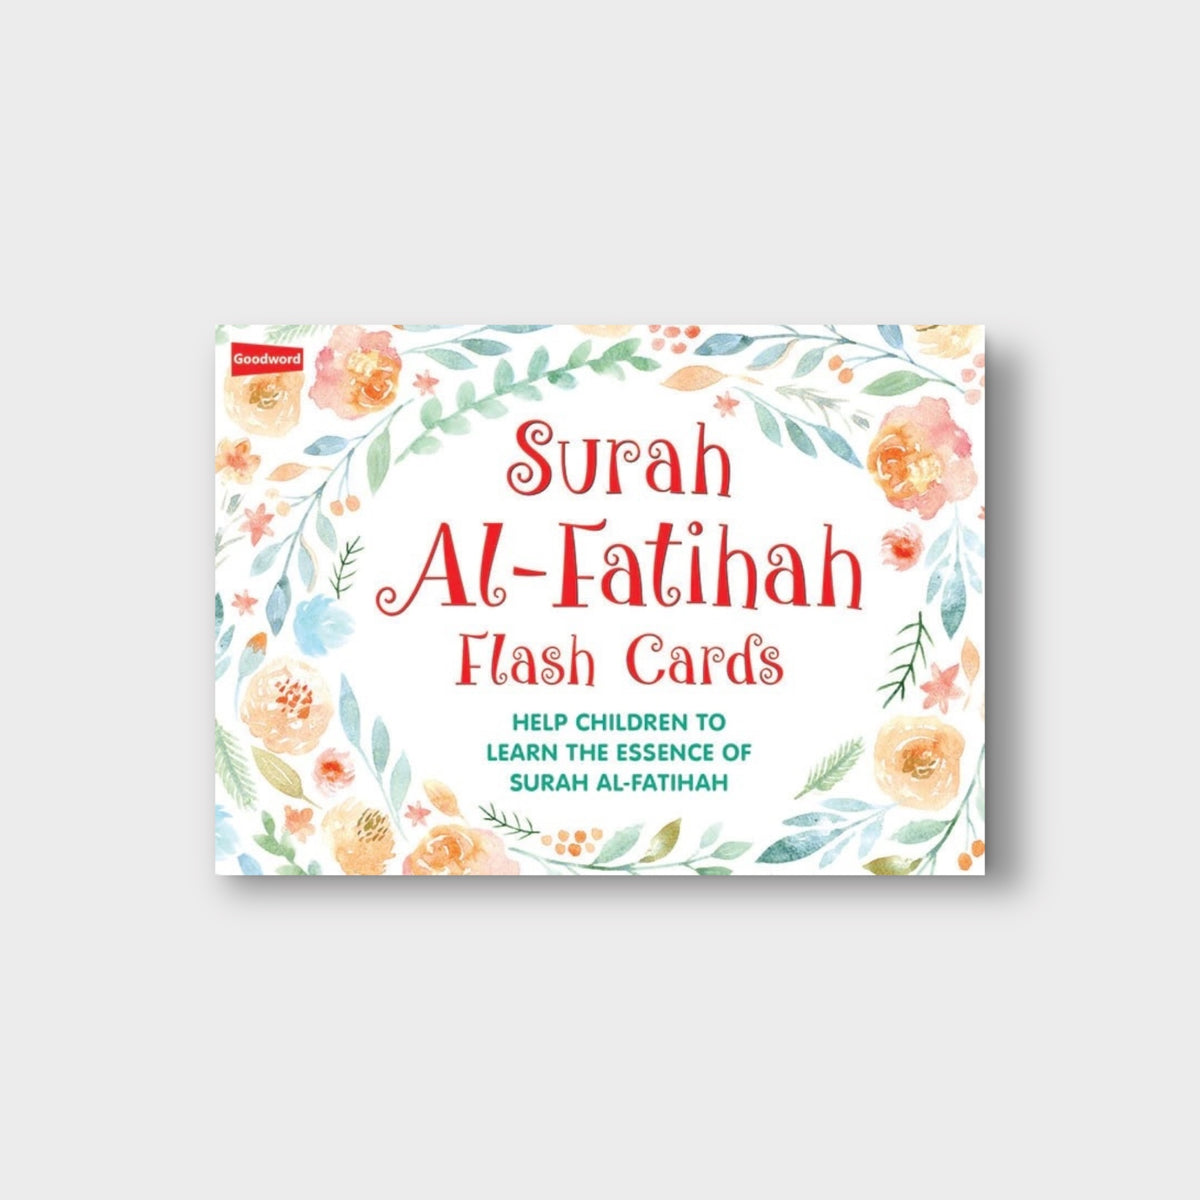 Surah Al-Fatihah Flash Cards